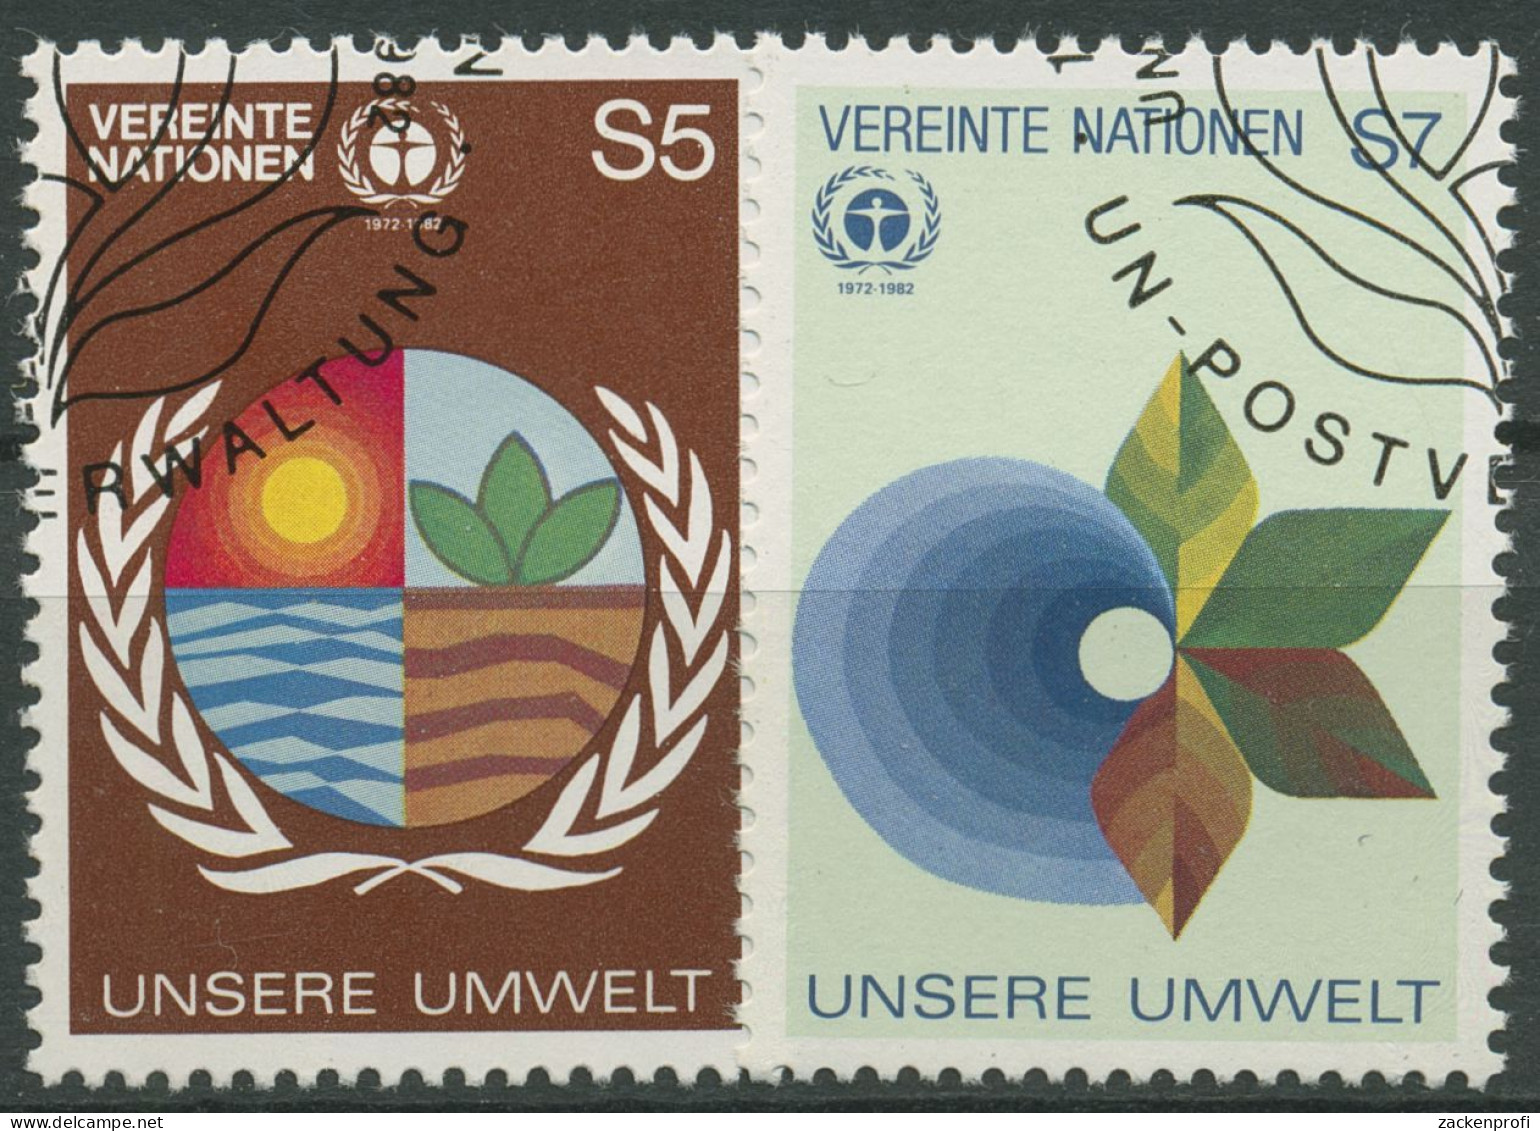 UNO Wien 1982 Umweltschutz Konferenz Stockholm 24/25 Gestempelt - Gebraucht